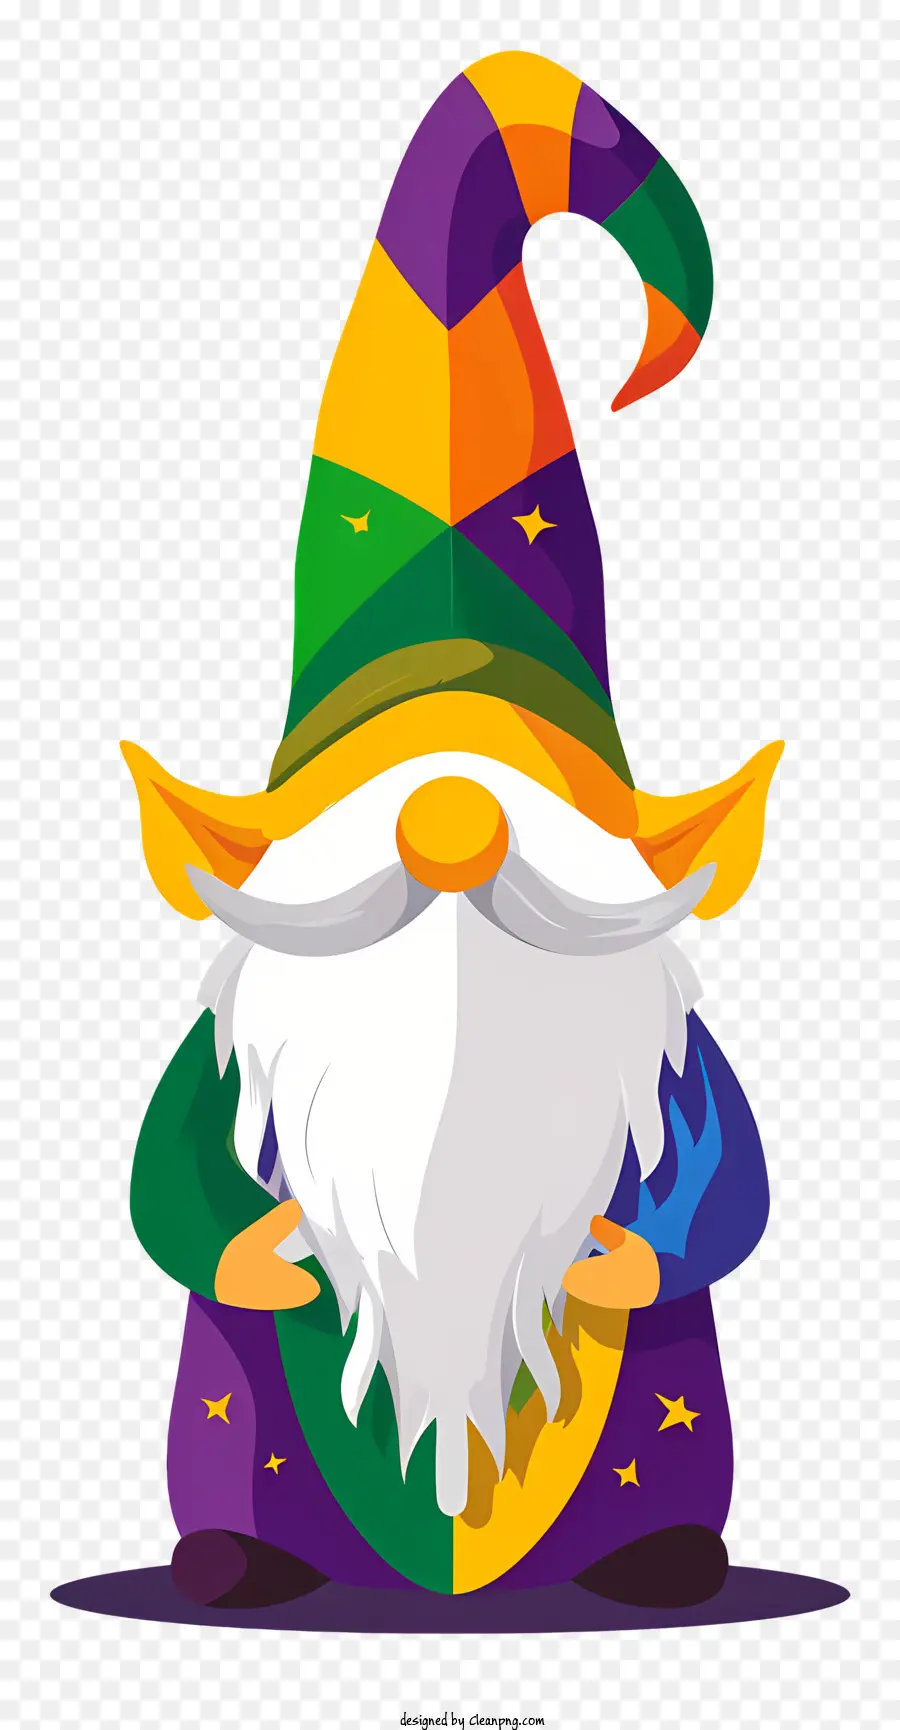 Mardi Gras Gnome Gnom Cartoon Charakter langer Bart buntes Outfit - Fröhlicher, farbenfroher Gnom mit Mitarbeitern und Gold